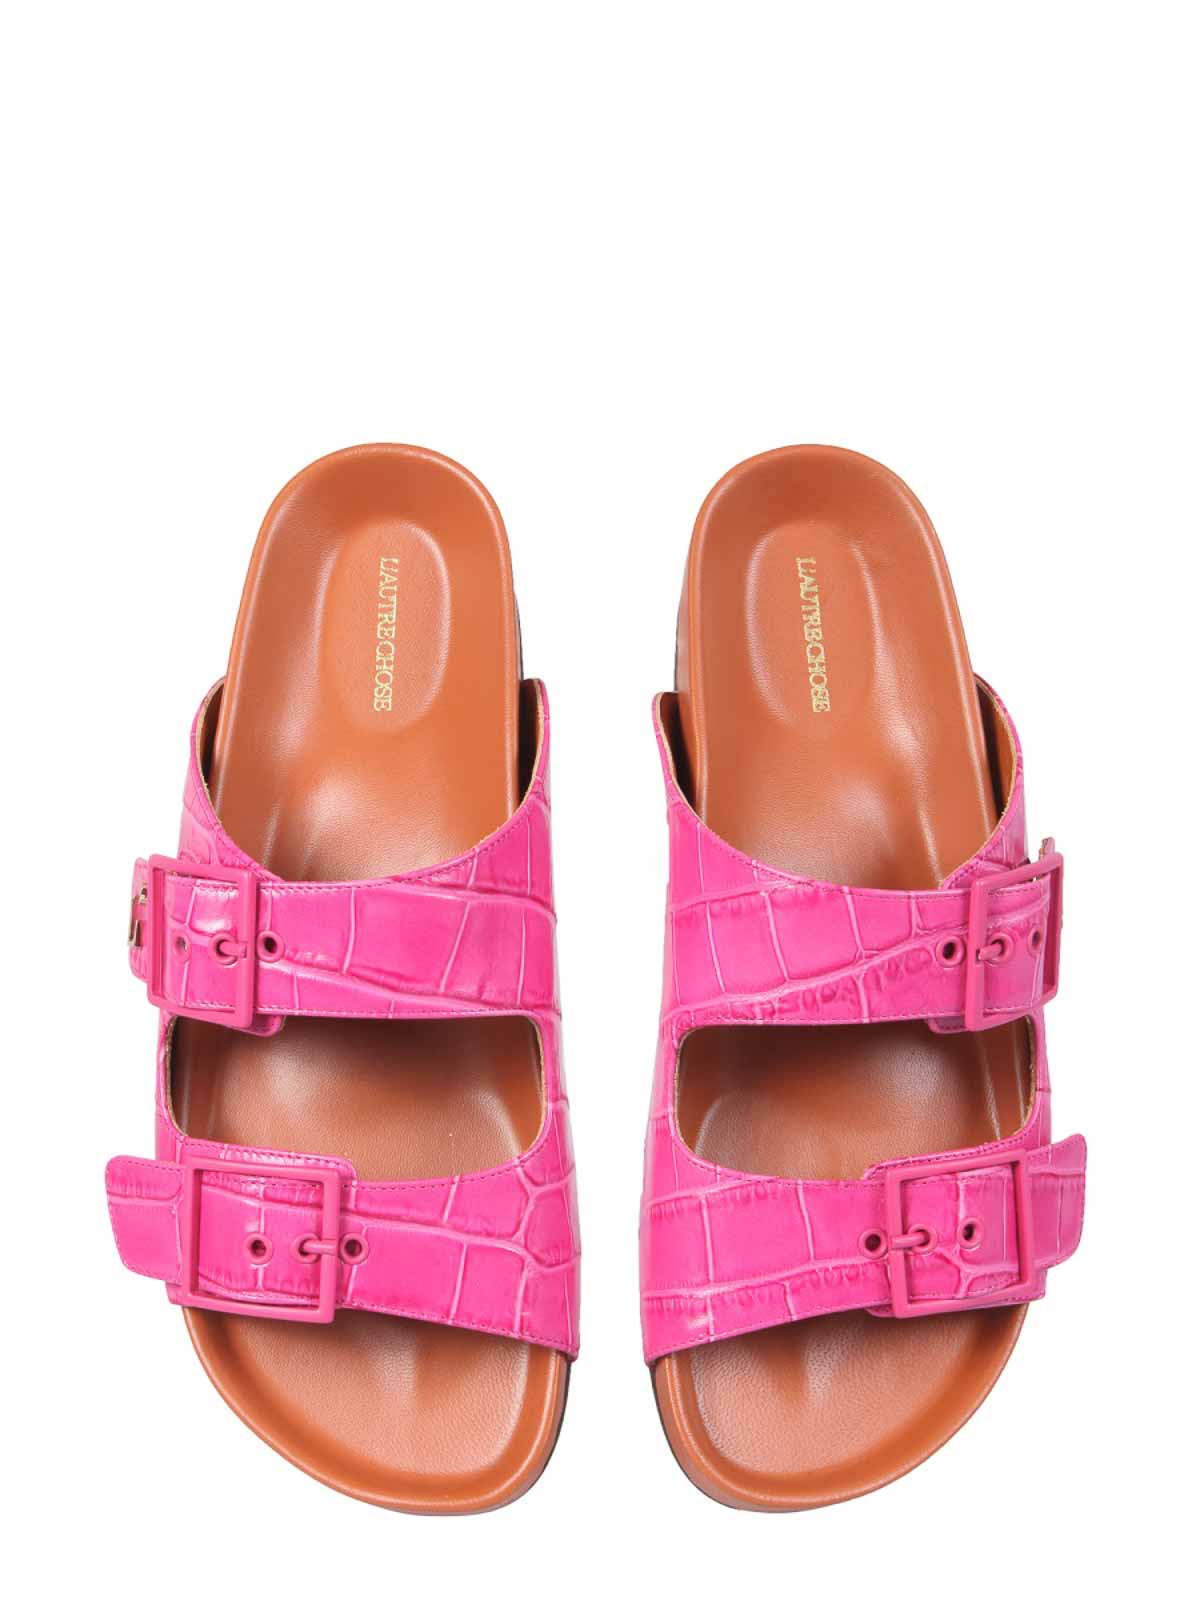 Shop L'autre Chose Sandals With Coconut Print Leather In Multicolour